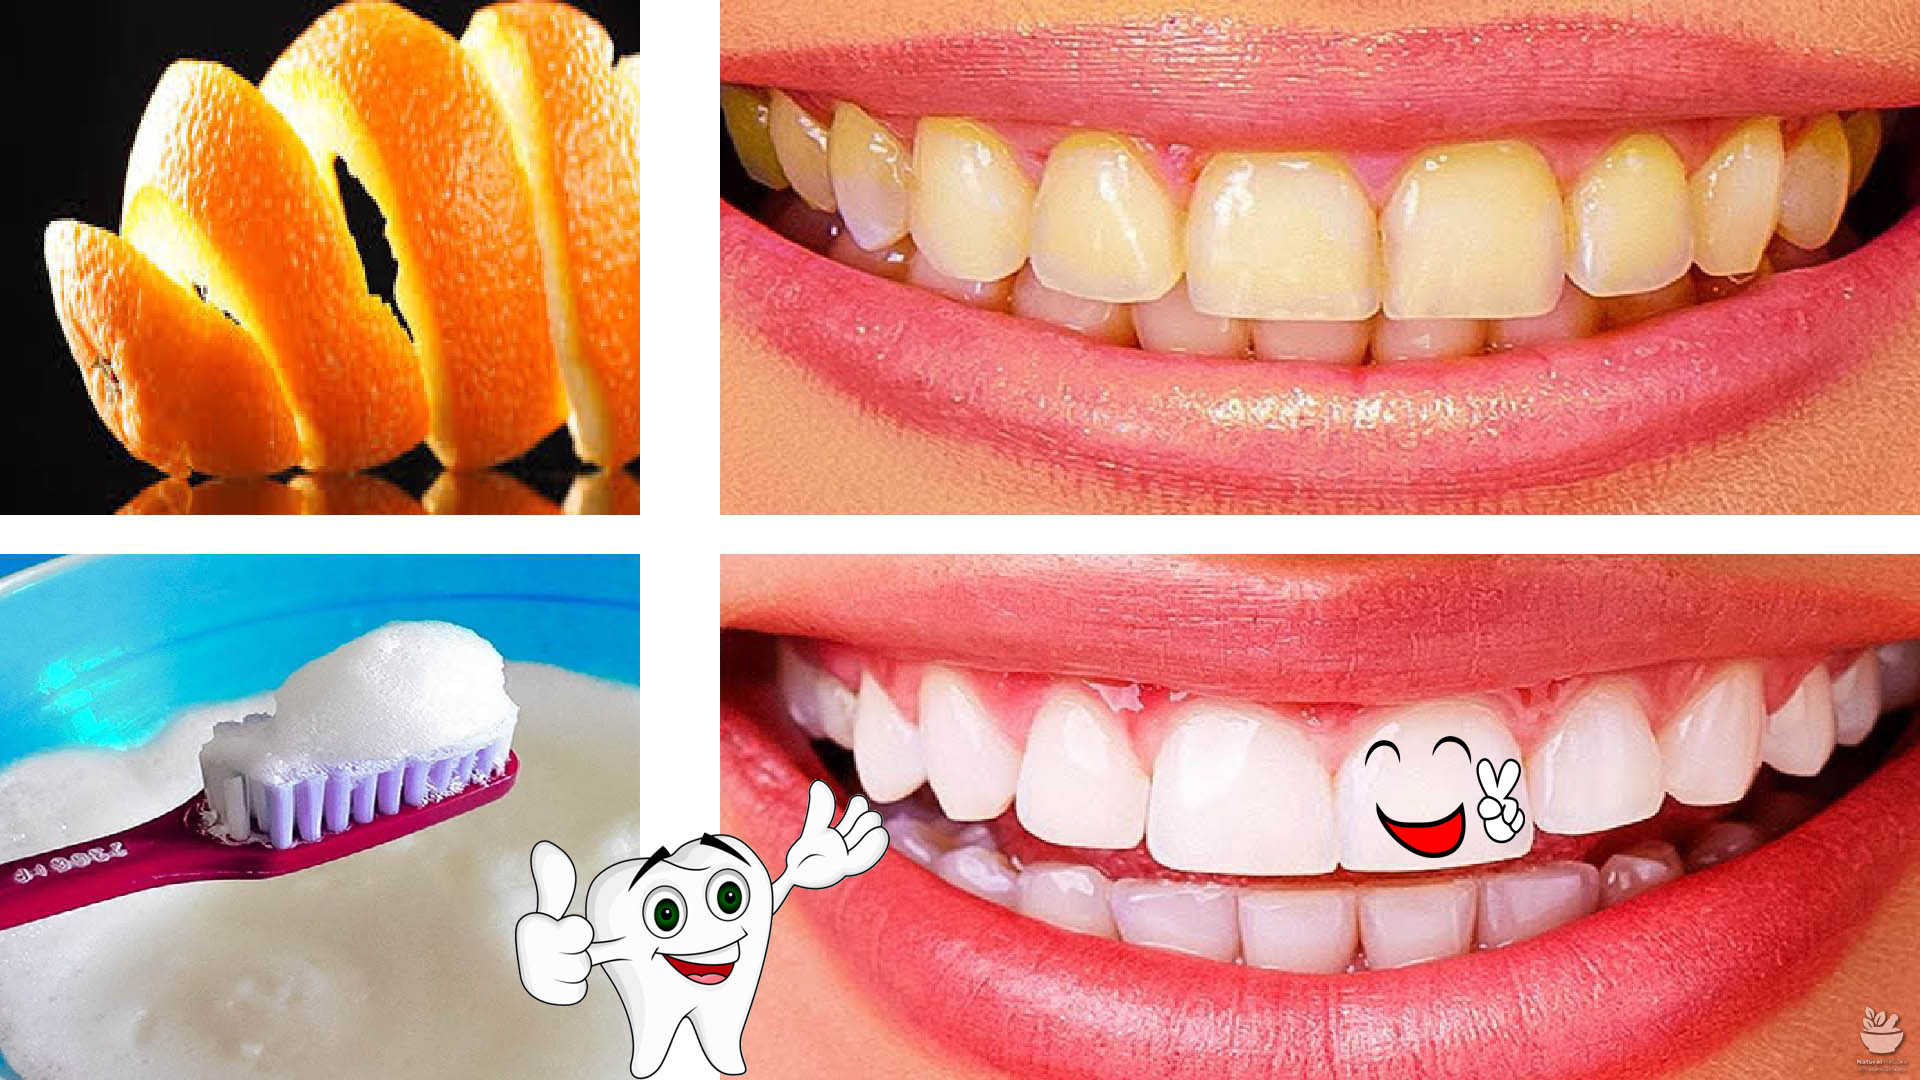 لصفوف اللولى.. تبييض الأسنان بسرعة في البيت بطرق طبيعية وفعالة من اول استخدام